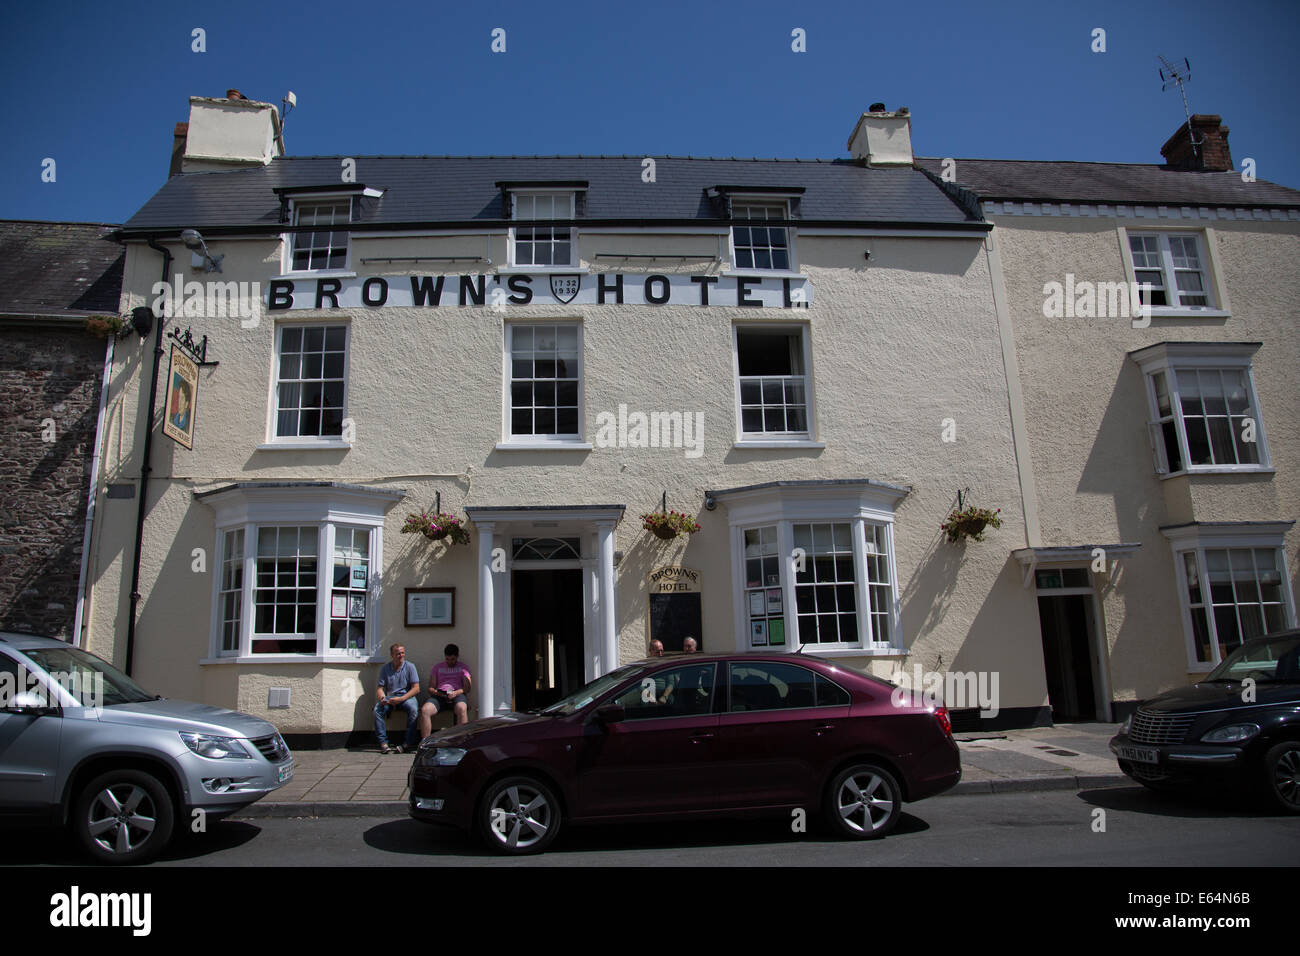 Browns Hotel Laugharne, West Wales. Das Inn war ein beliebter Treffpunkt der Dichter Dylan Thomas und seine Frau Caitlin Stockfoto